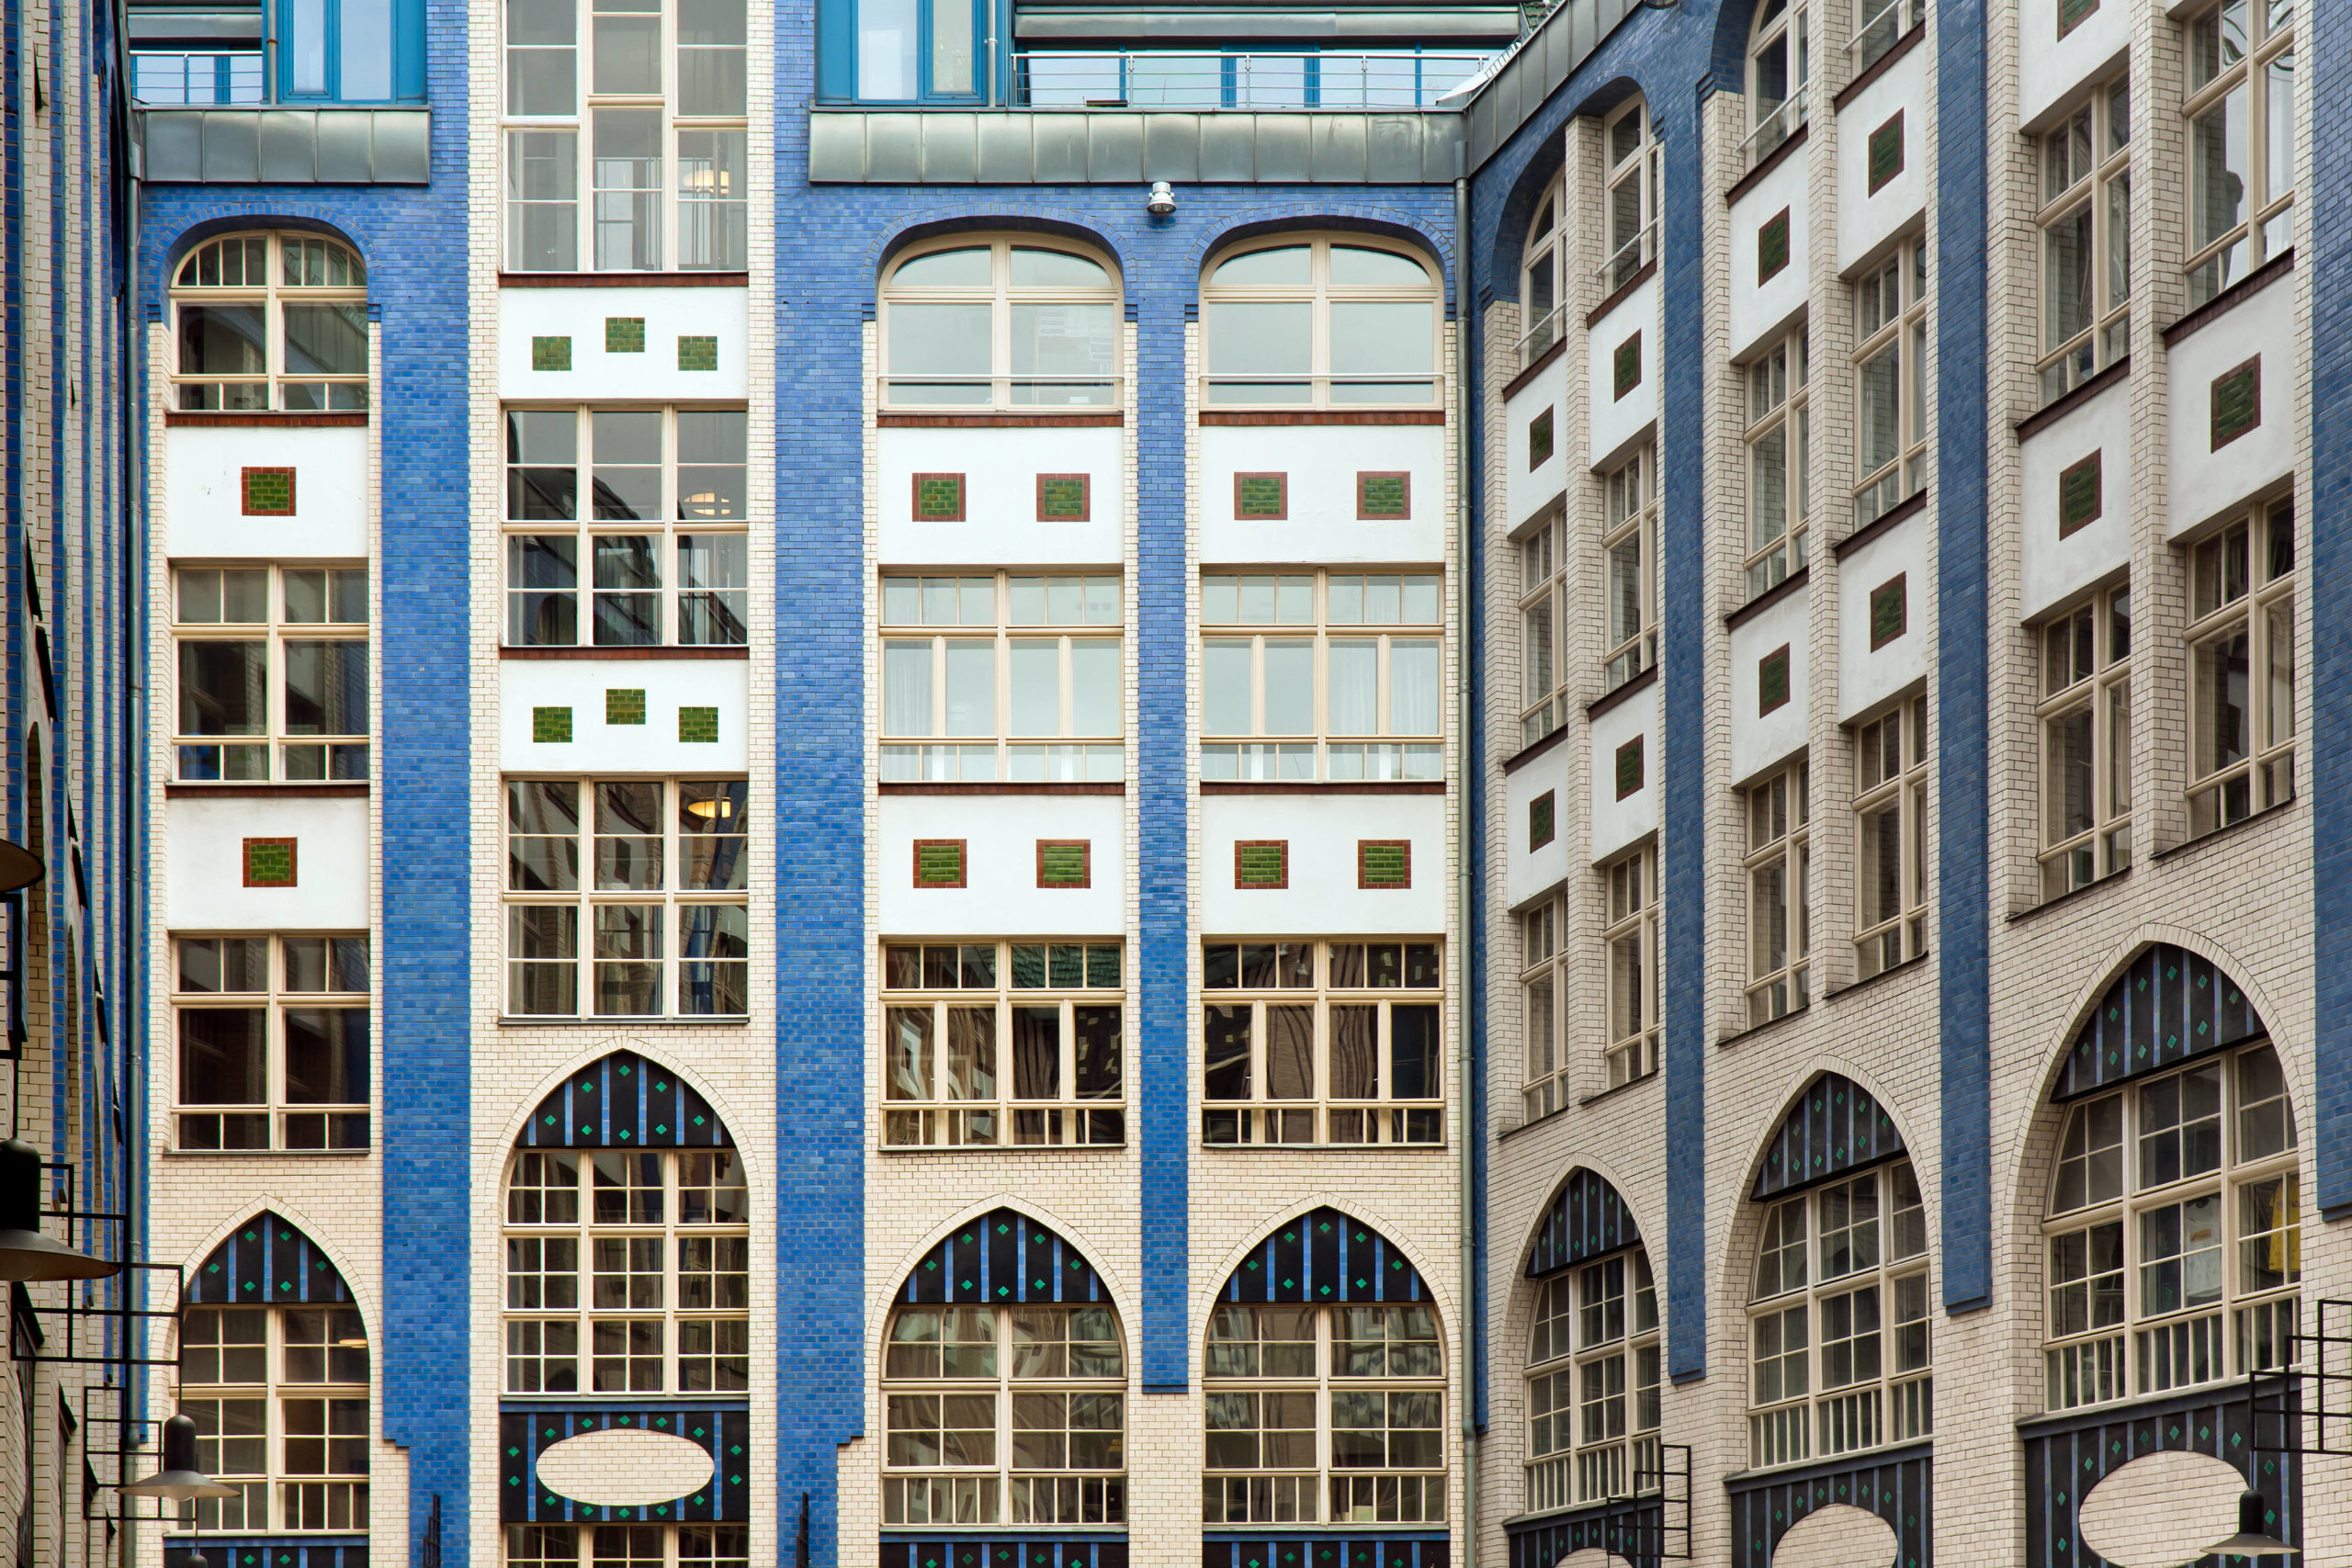 Berlin Fassaden: Fliesen und Spitzbögen in den Hackeschen Höfen. Foto: Imago/Shotshop